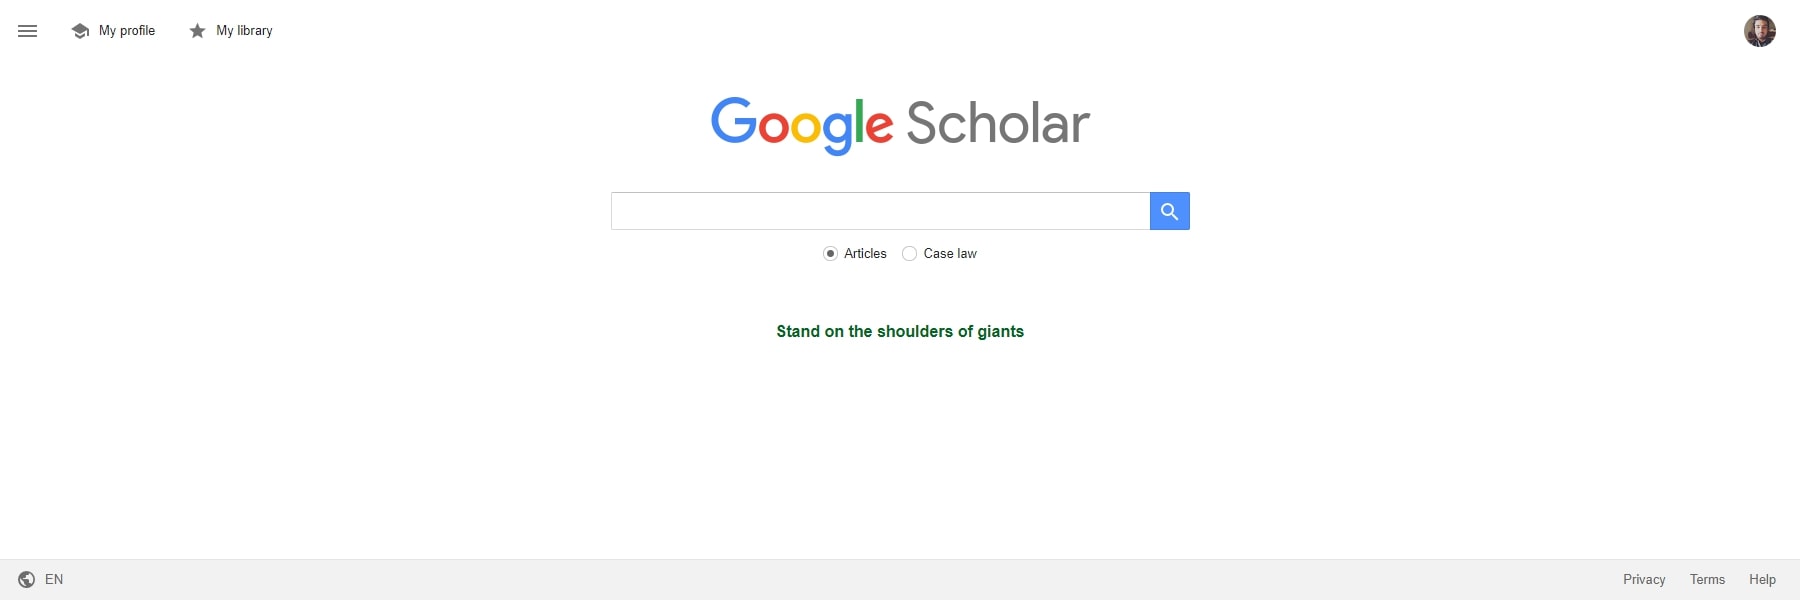 Herramientas de inteligencia artificial de Google Scholar para la educación